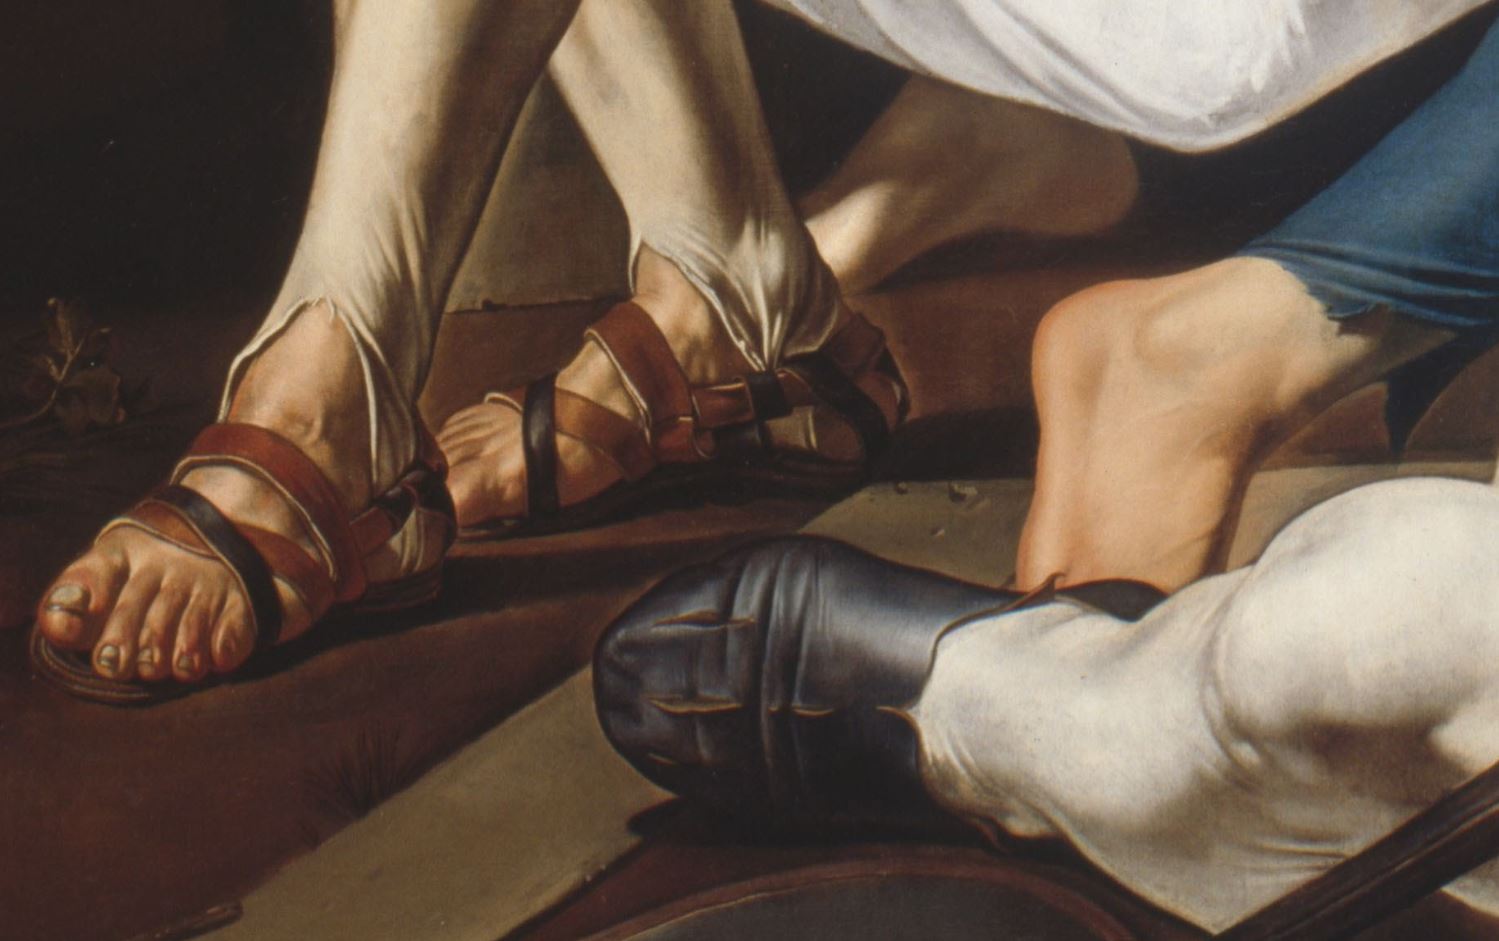 Francesco_Buoneri,_called_Cecco_del_Caravaggio_-_The_Resurrection 1620 Art Institute, Chicago detail pieds